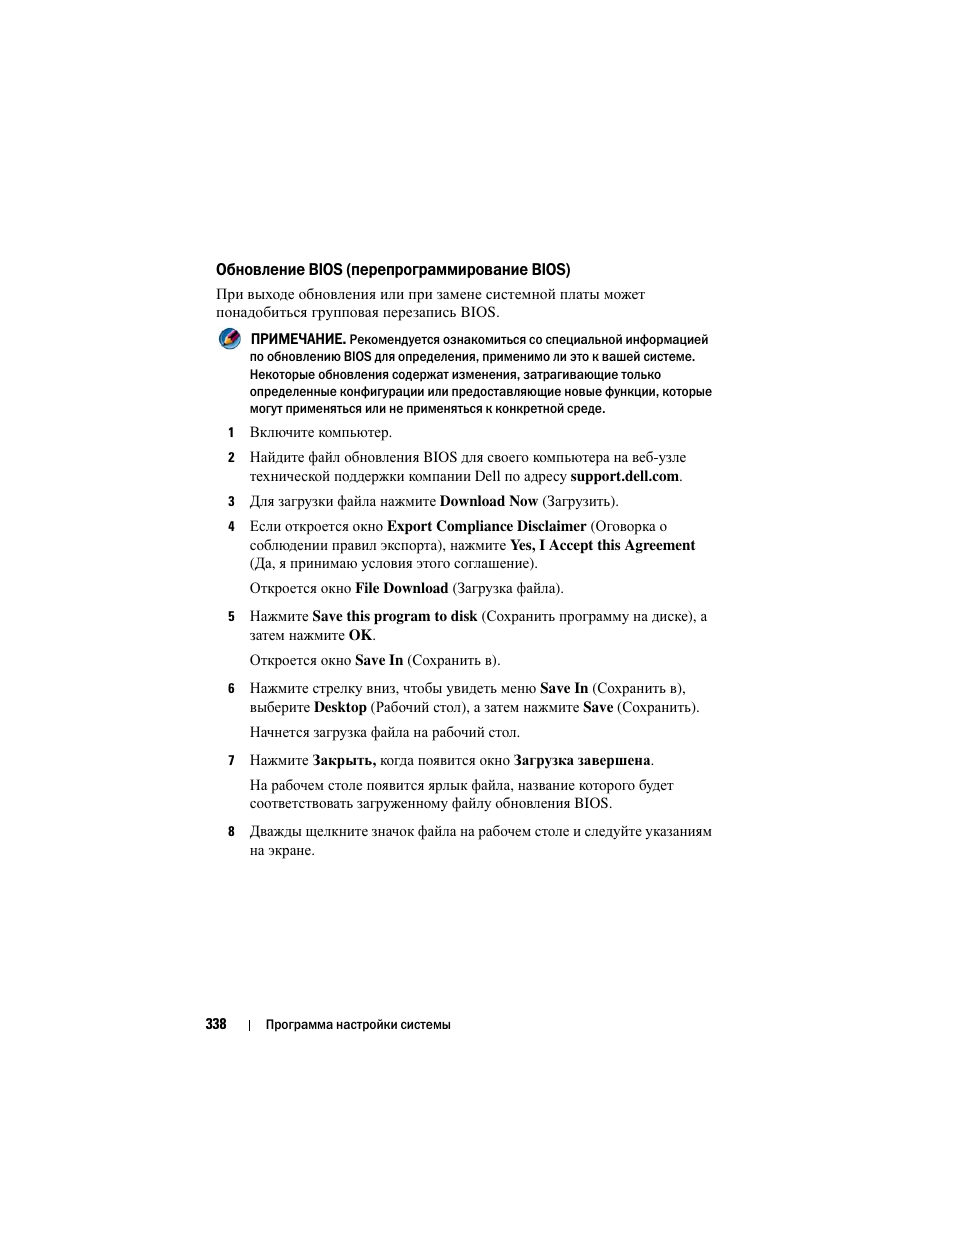 Обновление bios (перепрограммирование bios) | Инструкция по эксплуатации Dell Inspiron 560 | Страница 338 / 384